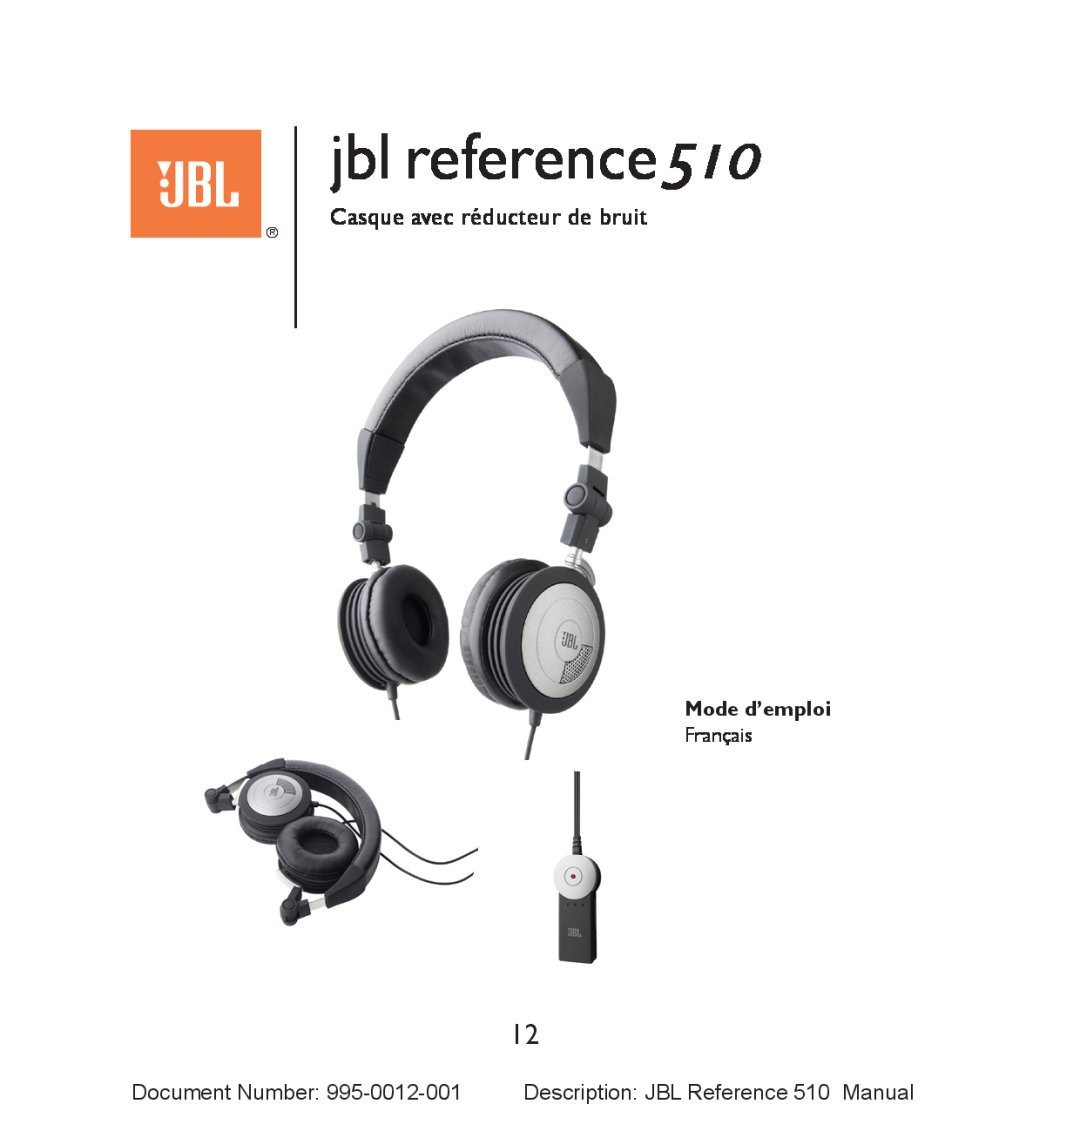 JBL manual Casque avec réducteur de bruit, Mode d’emploi, jbl reference510 